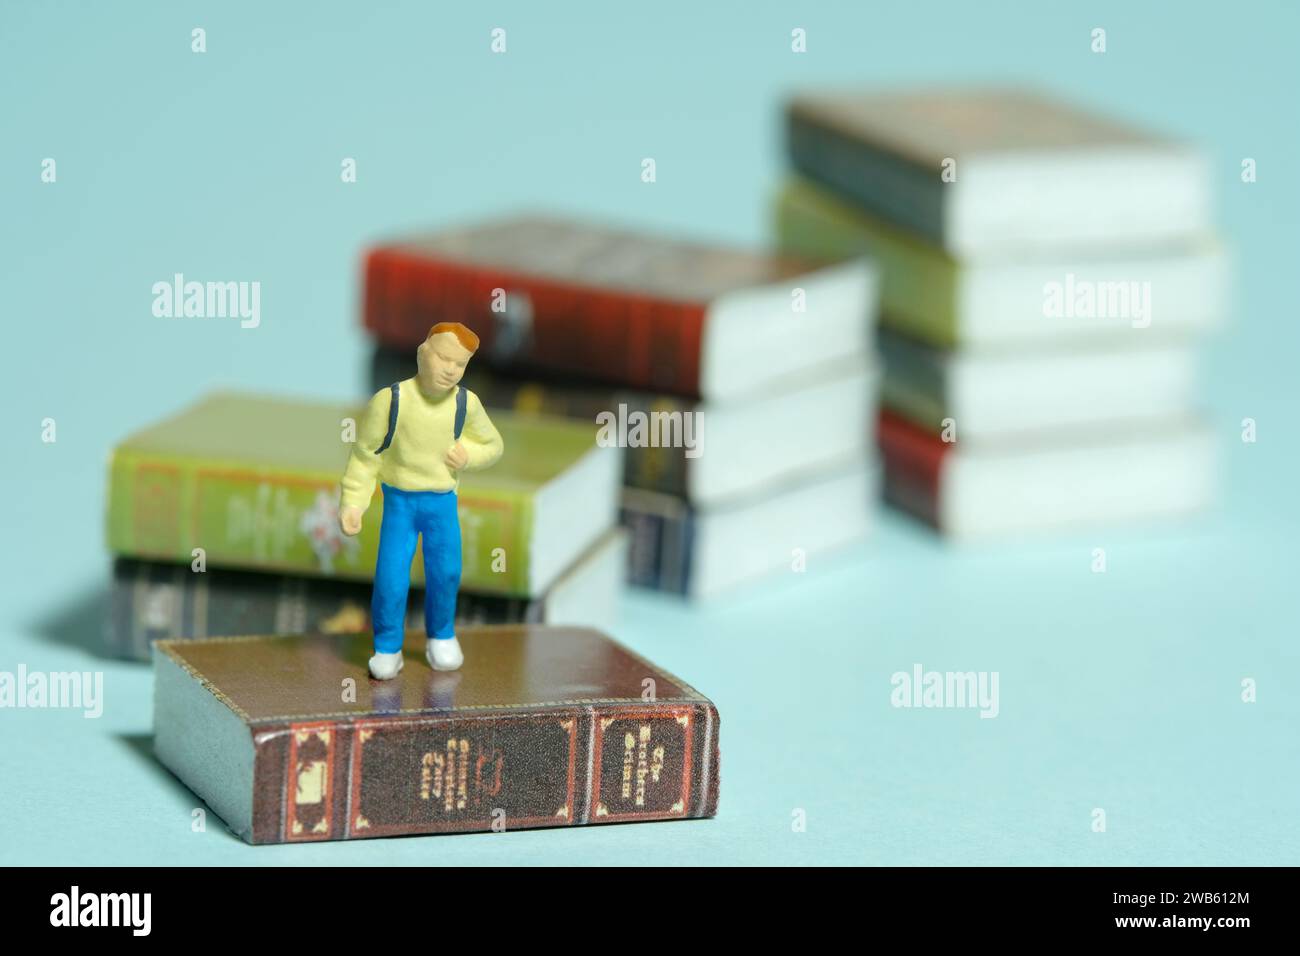 Fotografia in miniatura di giocattoli per persone piccole. Un ragazzo con uno zaino scolastico in piedi sopra la scala del libro. Isolato su sfondo blu. Foto immagine Foto Stock